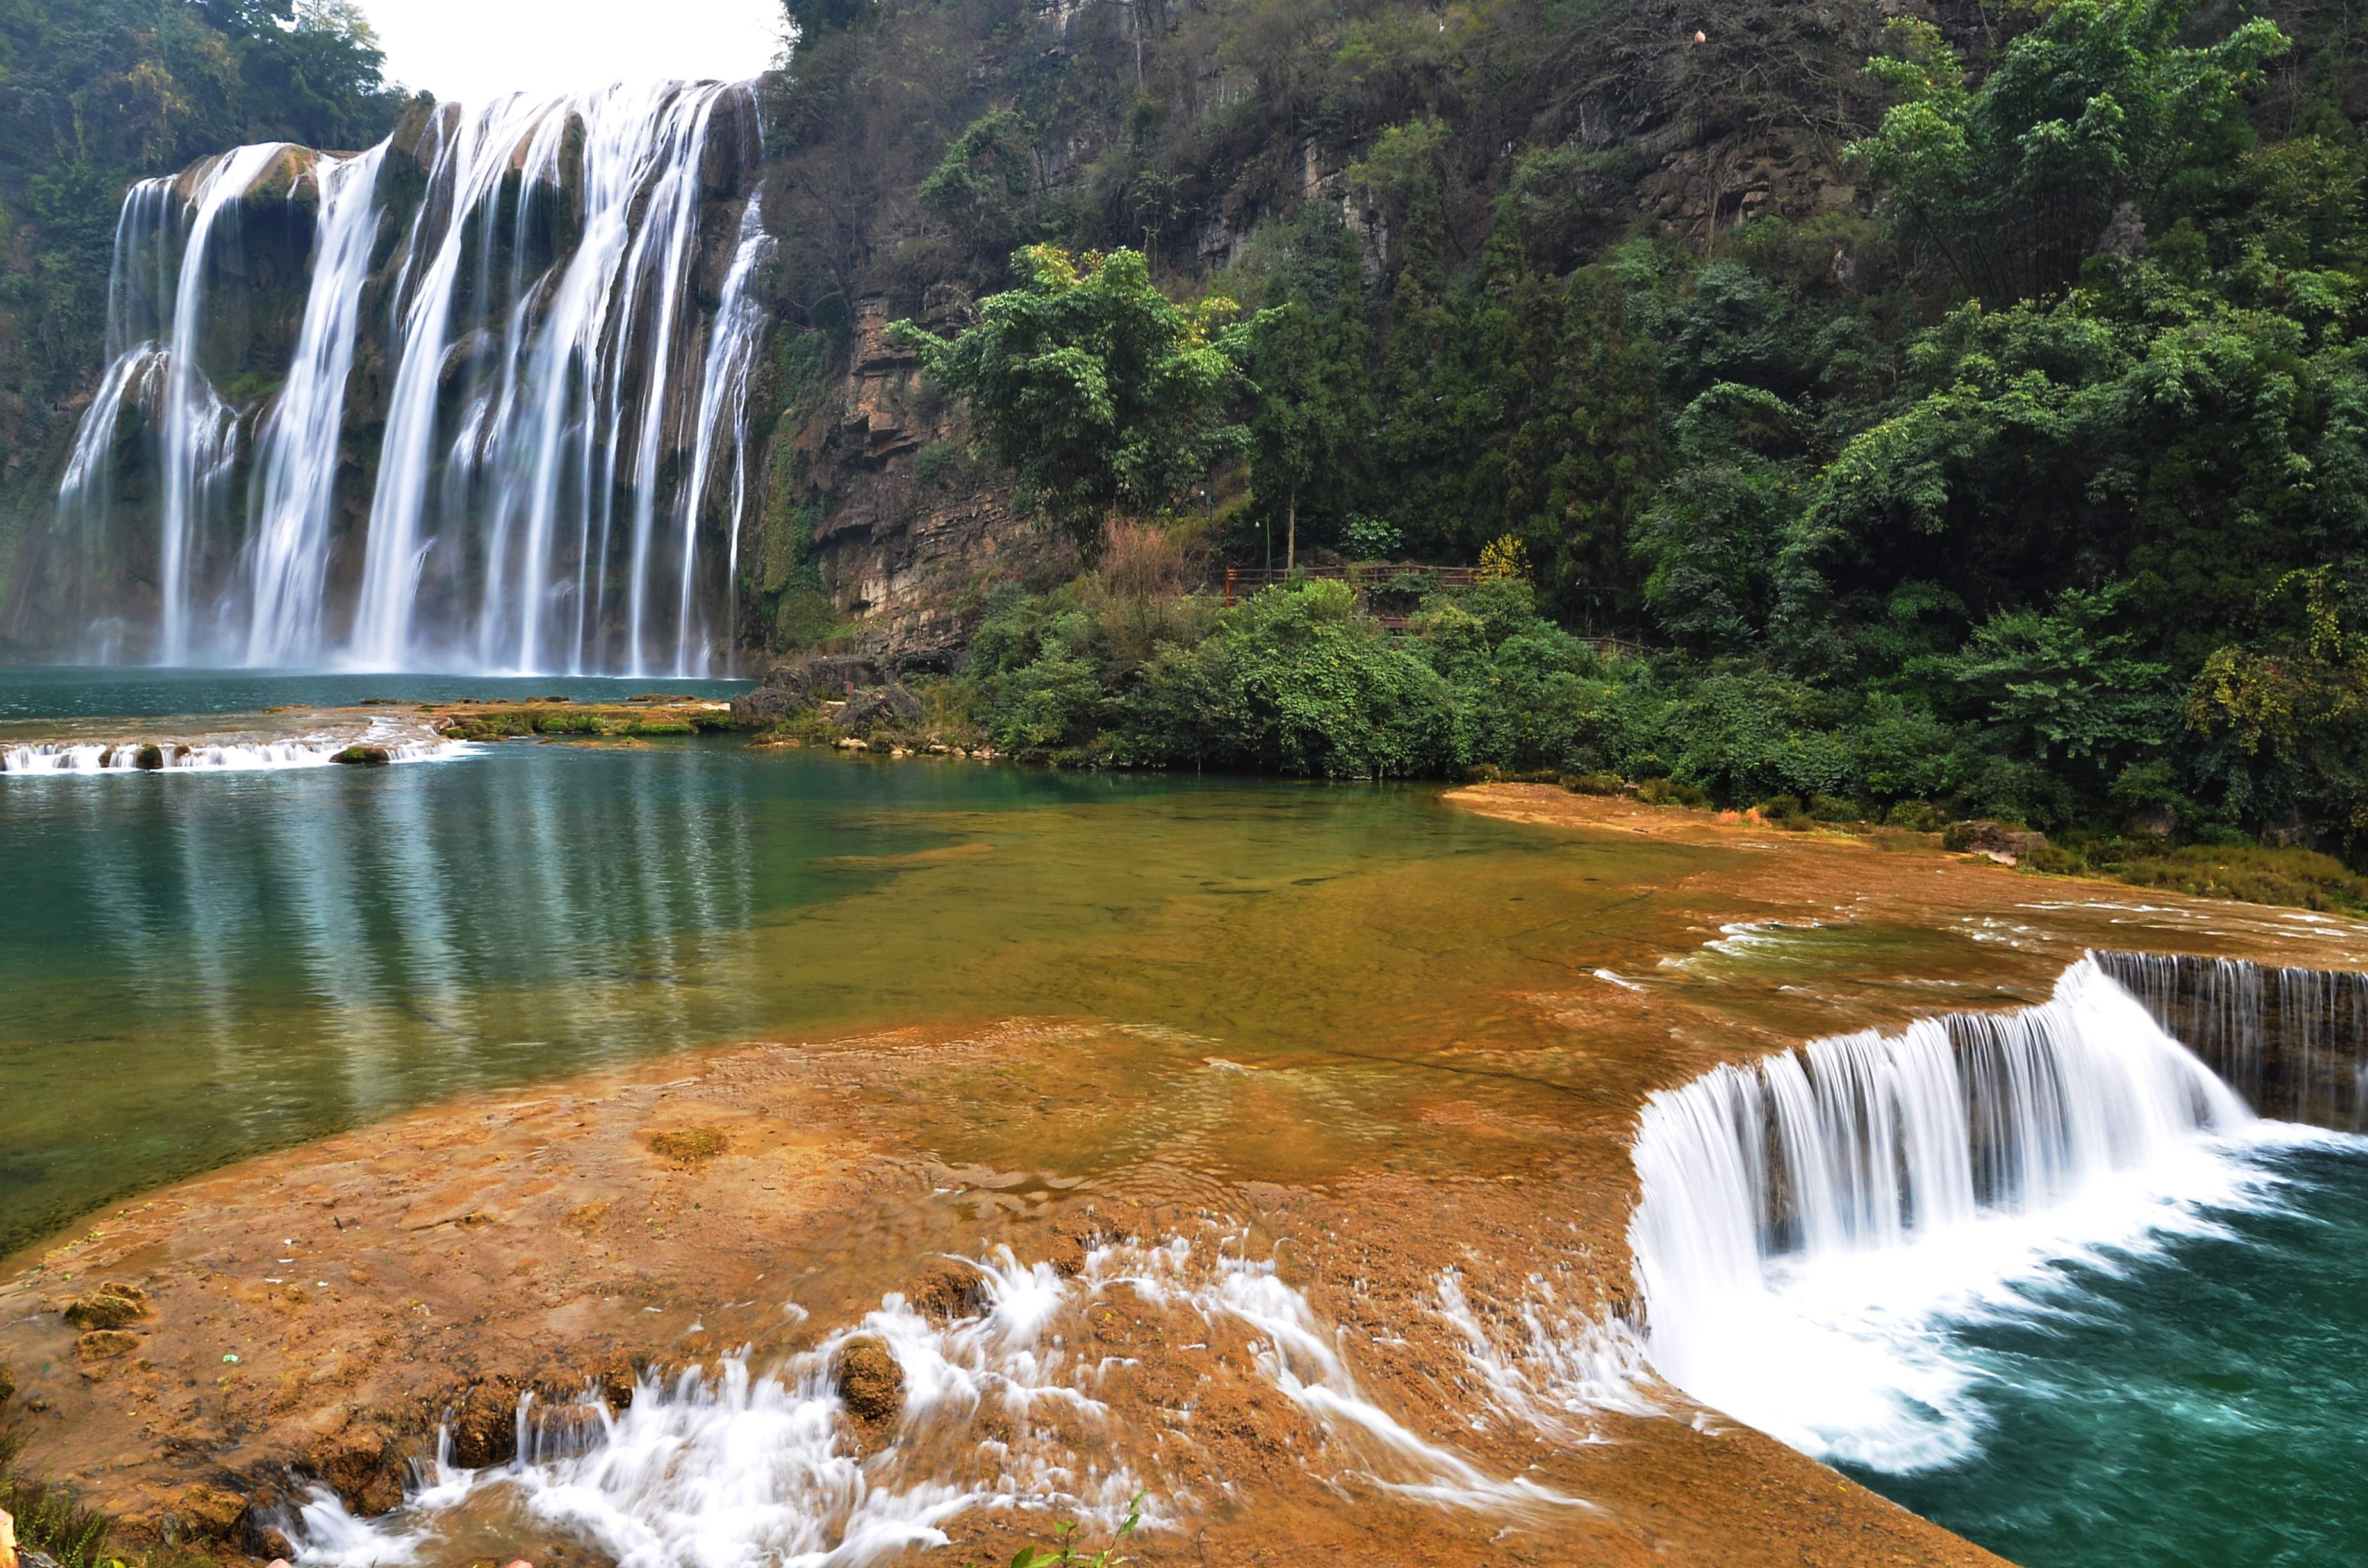 黄果树大瀑布是亚洲最大的瀑布,雄奇壮阔,十分壮丽美绝伦